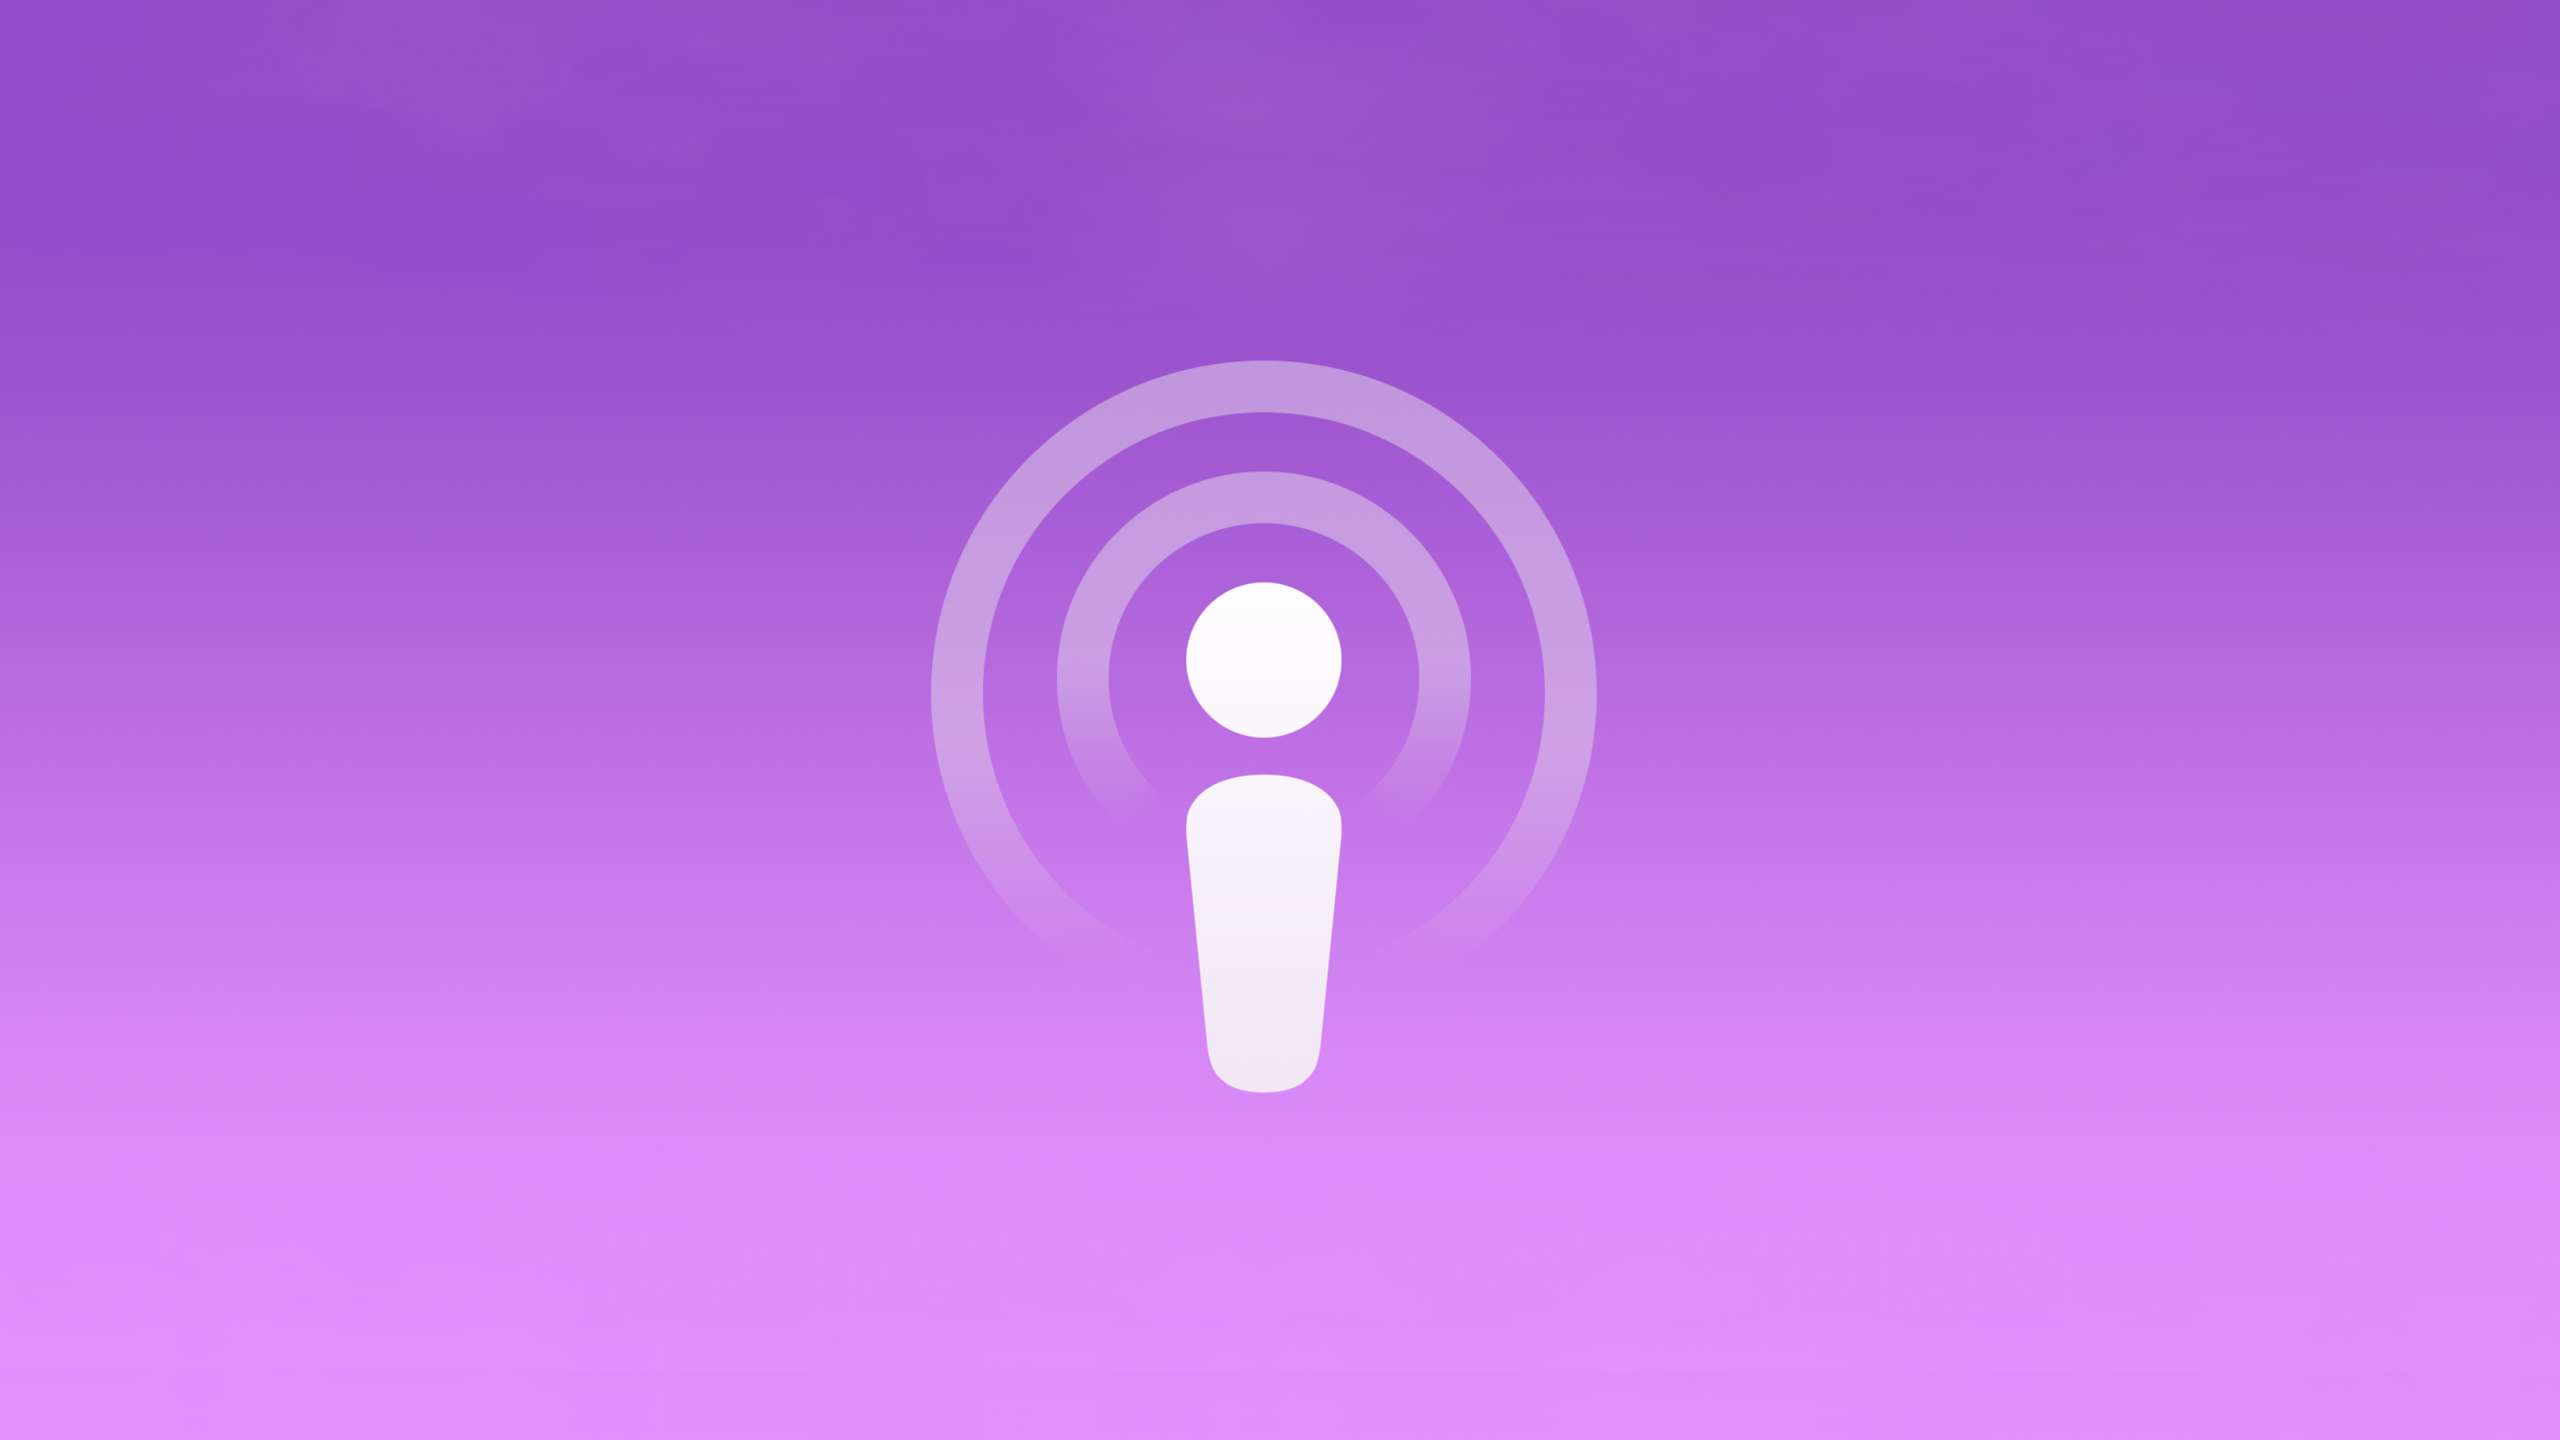 الخدمات 21 أبريل 2021 0comments يذهب الكثير Apple قبض على الاشتراكات في تطبيقات Podcasts التي تم تجديدها